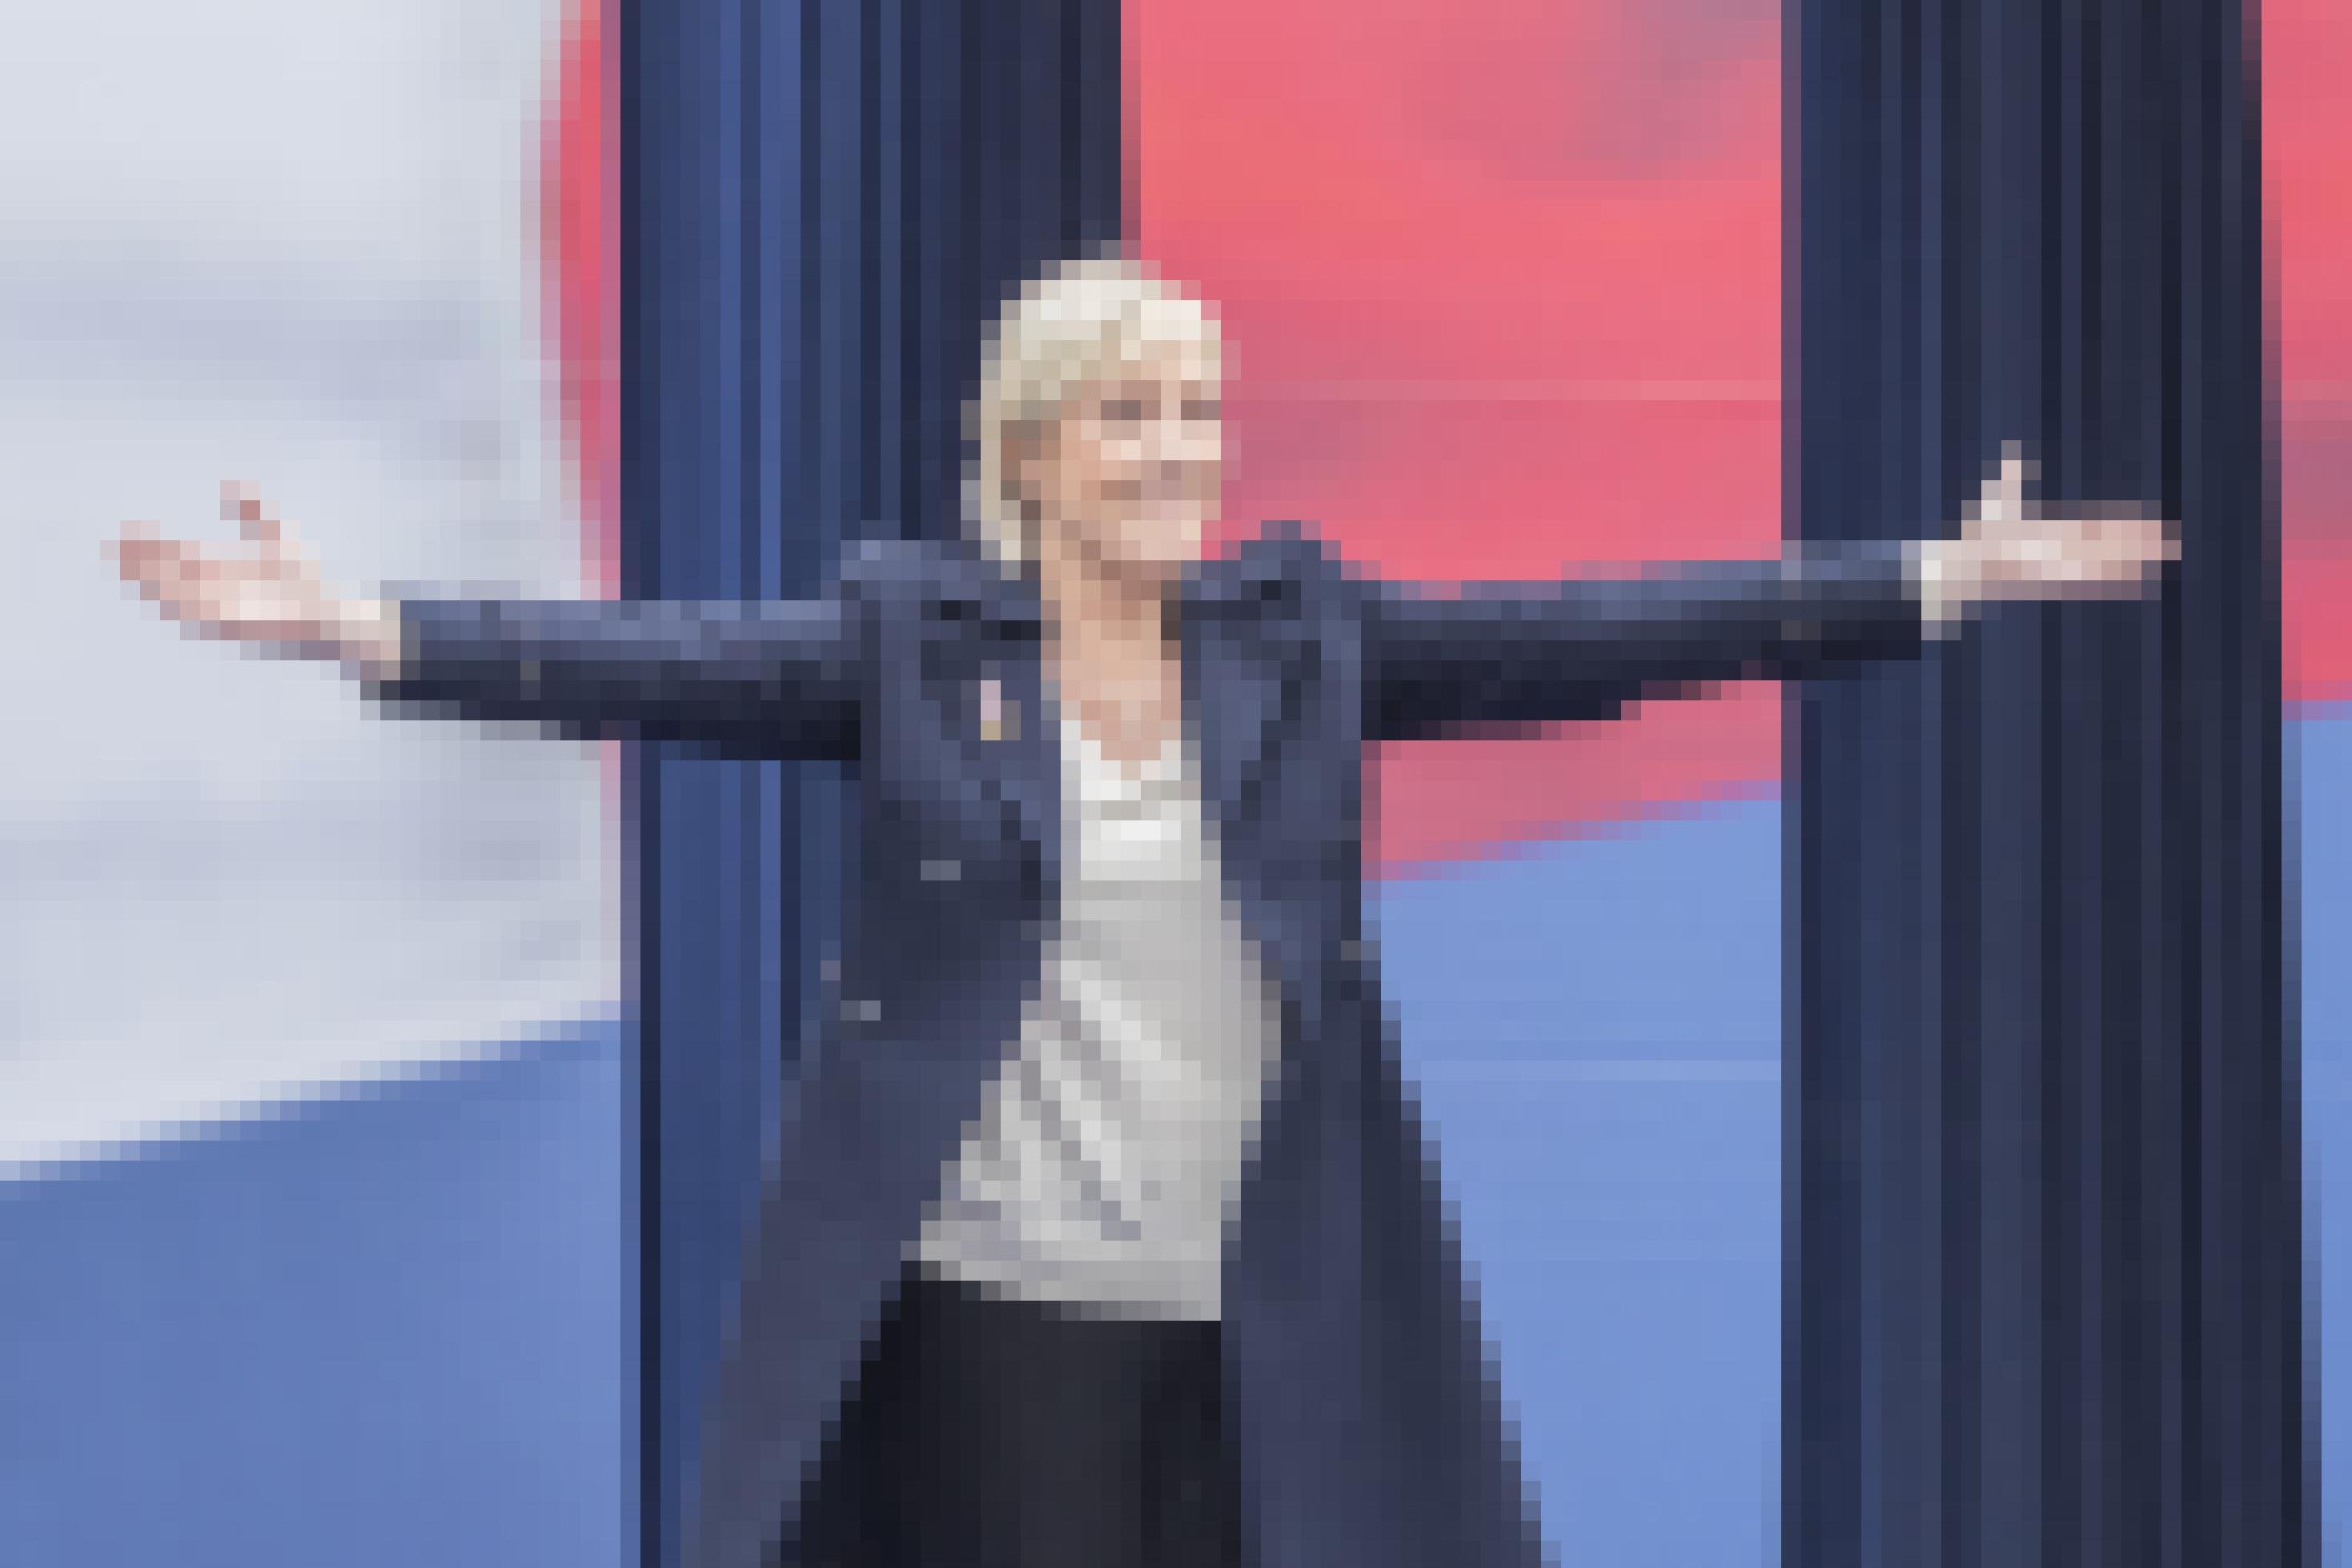 Marie Le Pen von Front National bei einer Rede zum ersten Mai im Jahr 2015.